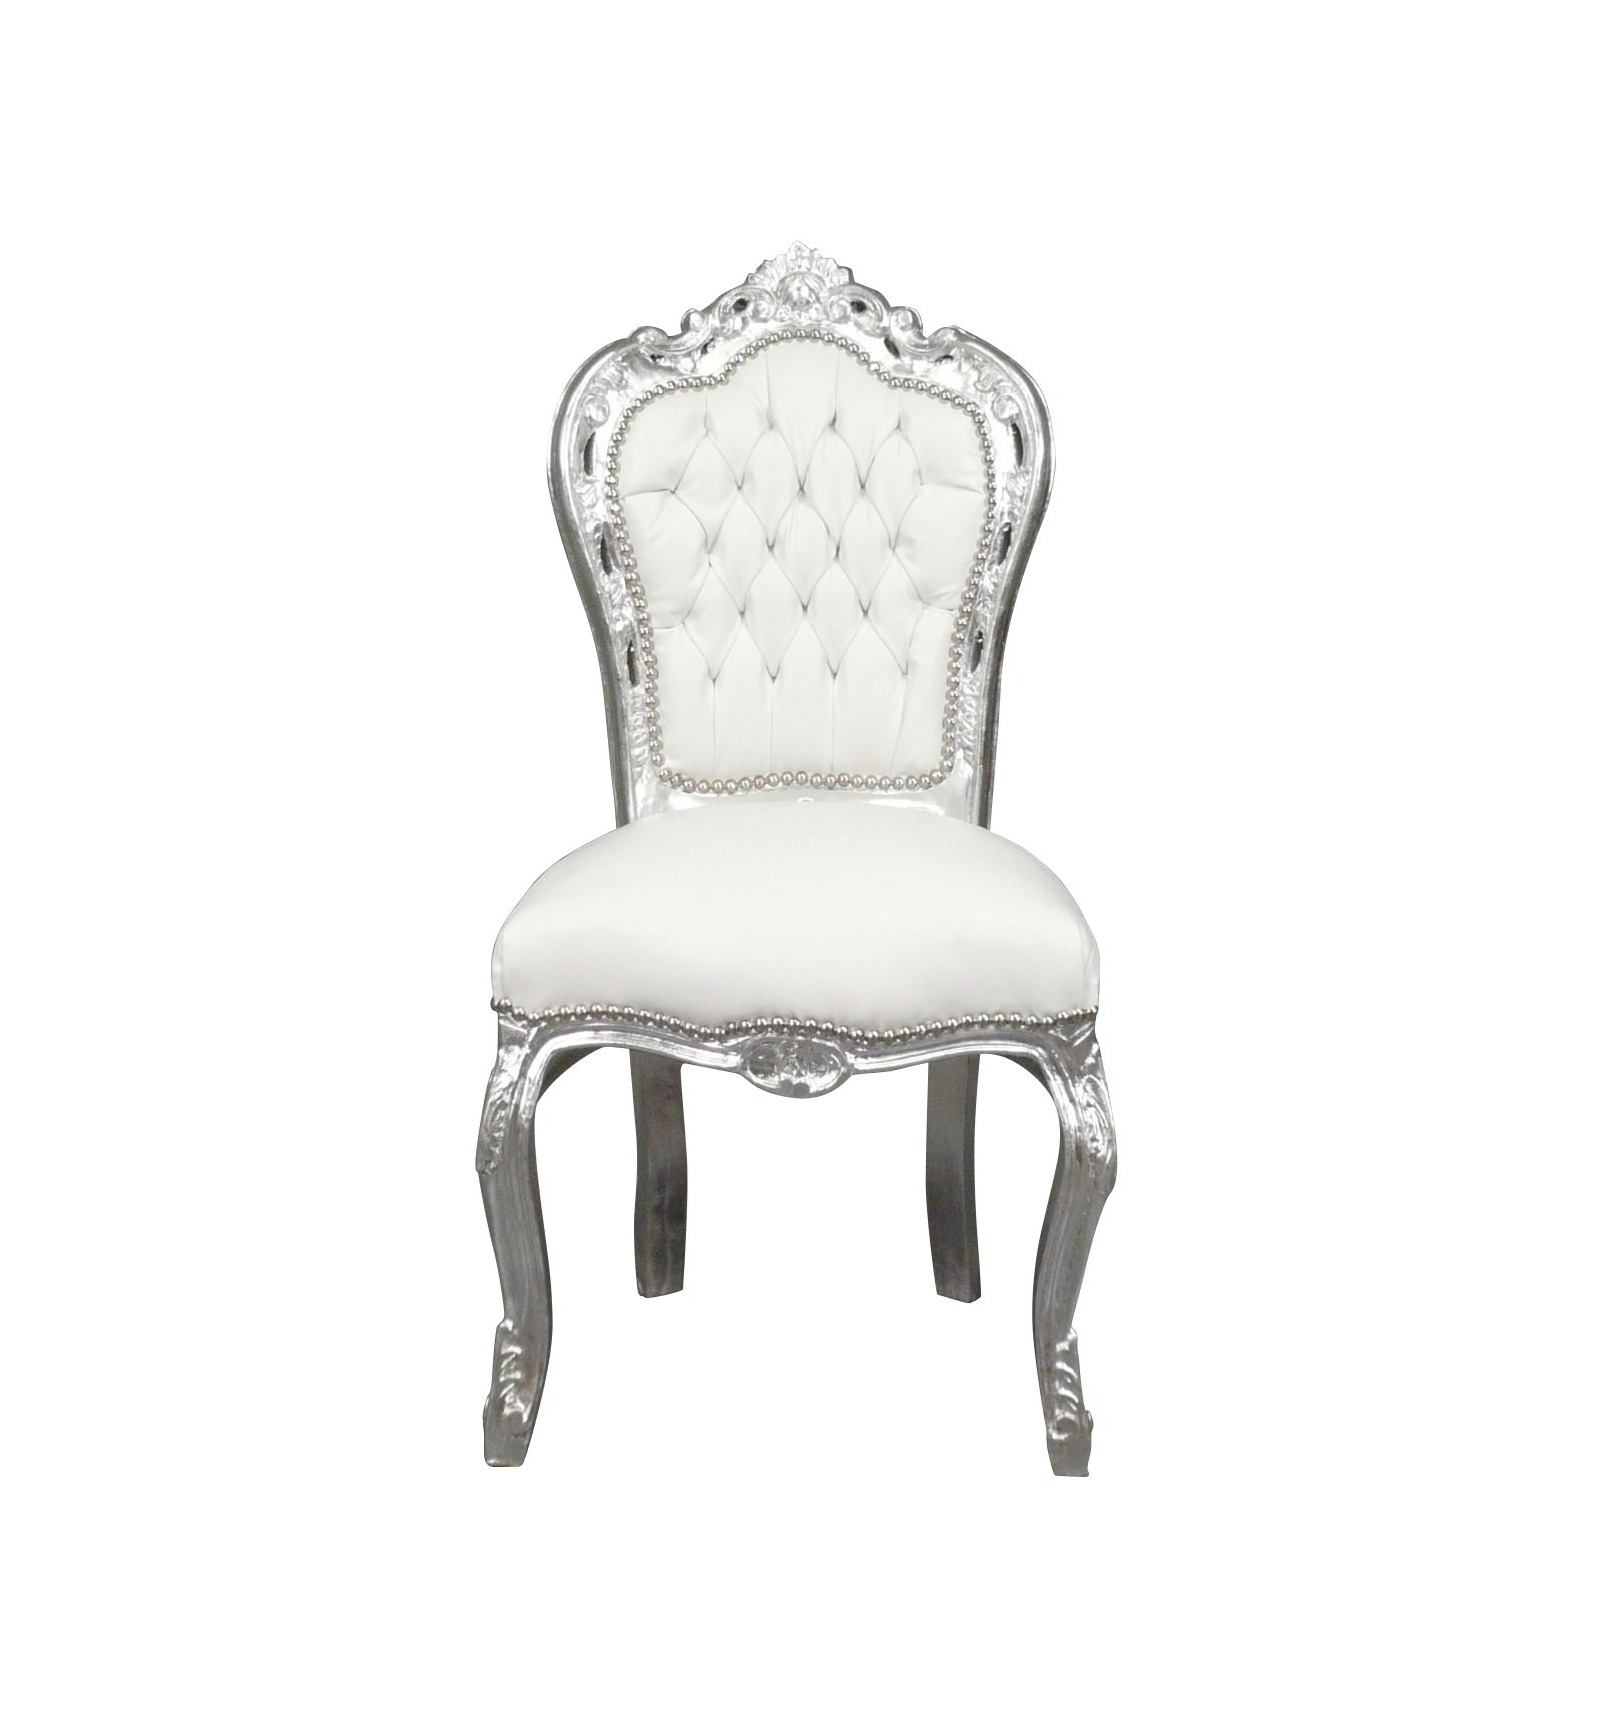 Uitstekend positie Roest Barok stoel wit en zilver - Barok meubels